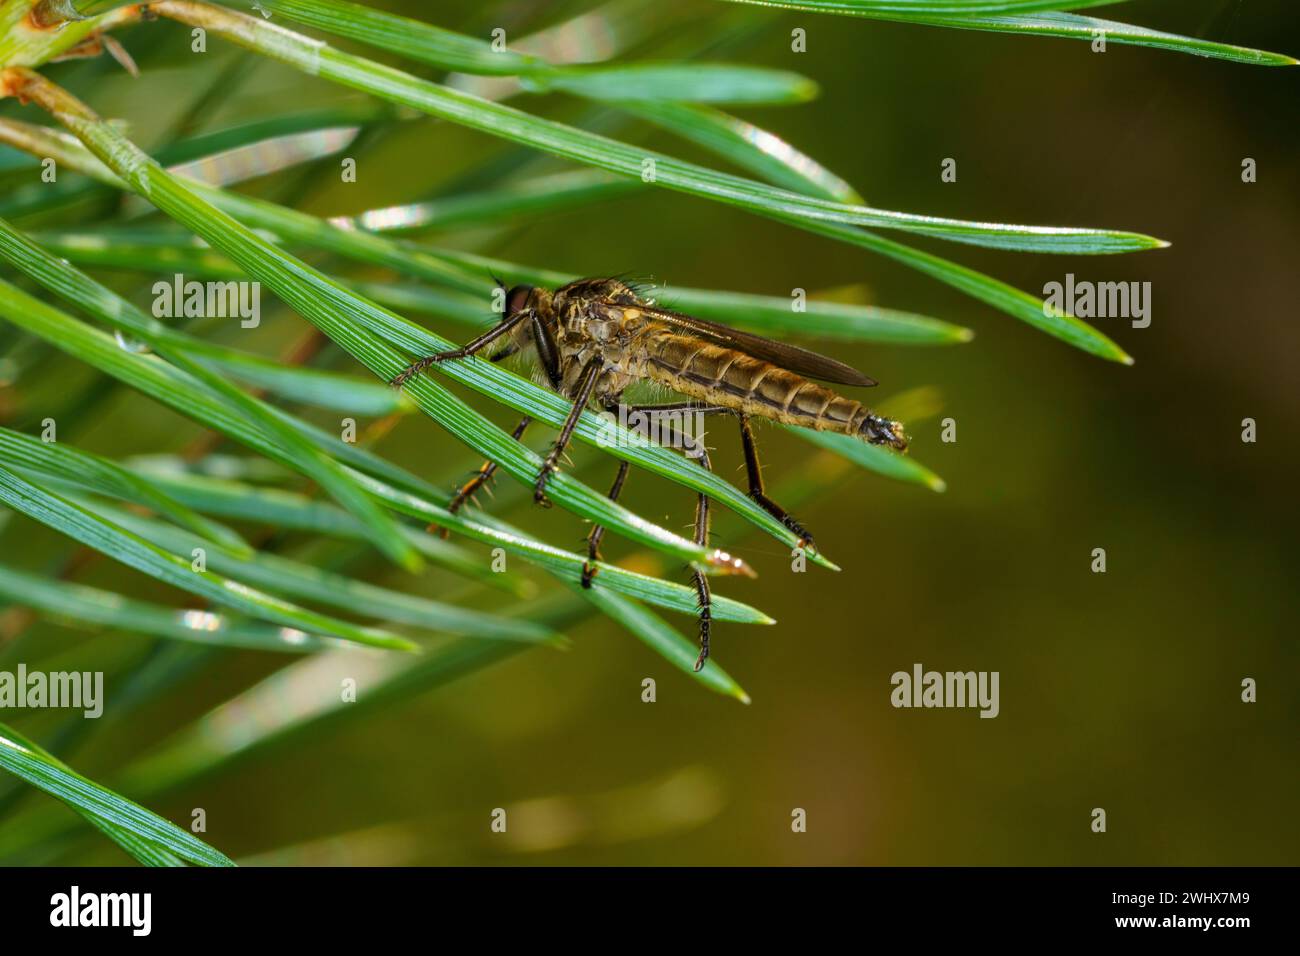 Didysmachus picipes Gattung Didysmachus Familie Asilidae Diptera Räuberfliege Assassinfliege wilde Natur Insekten Tapete, Bild, Fotografie Stockfoto